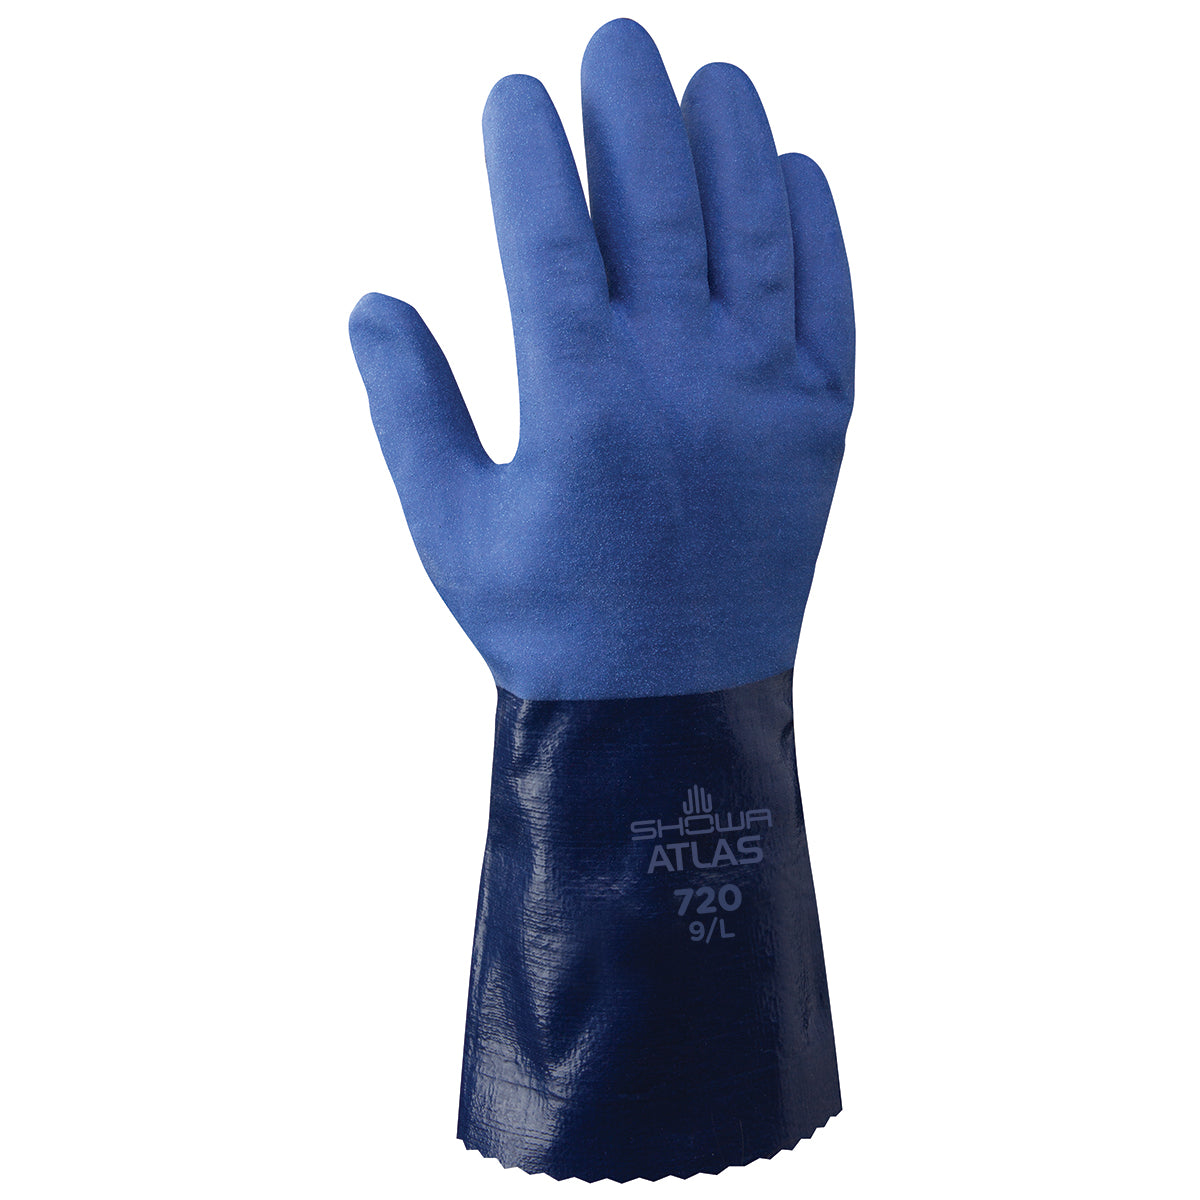 Showa 720 Nitrile Glove